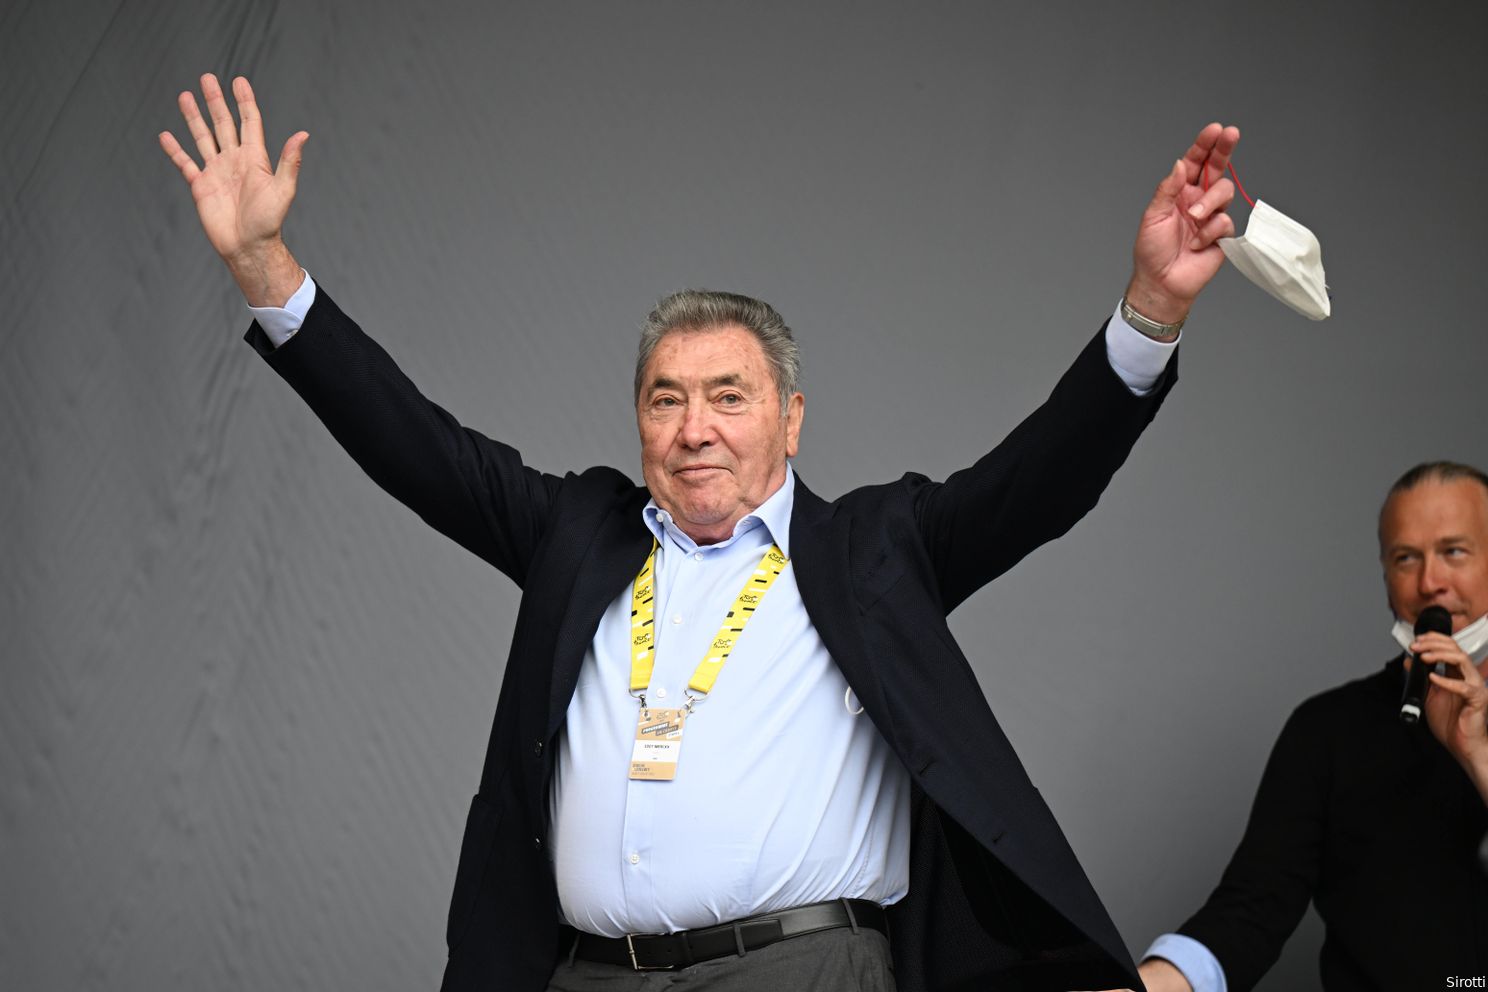 De Vlaeminck shockeert: van 'Pogacar had mij nooit gelost' tot 'Pogacar zou vijf minuten achter Merckx staan'